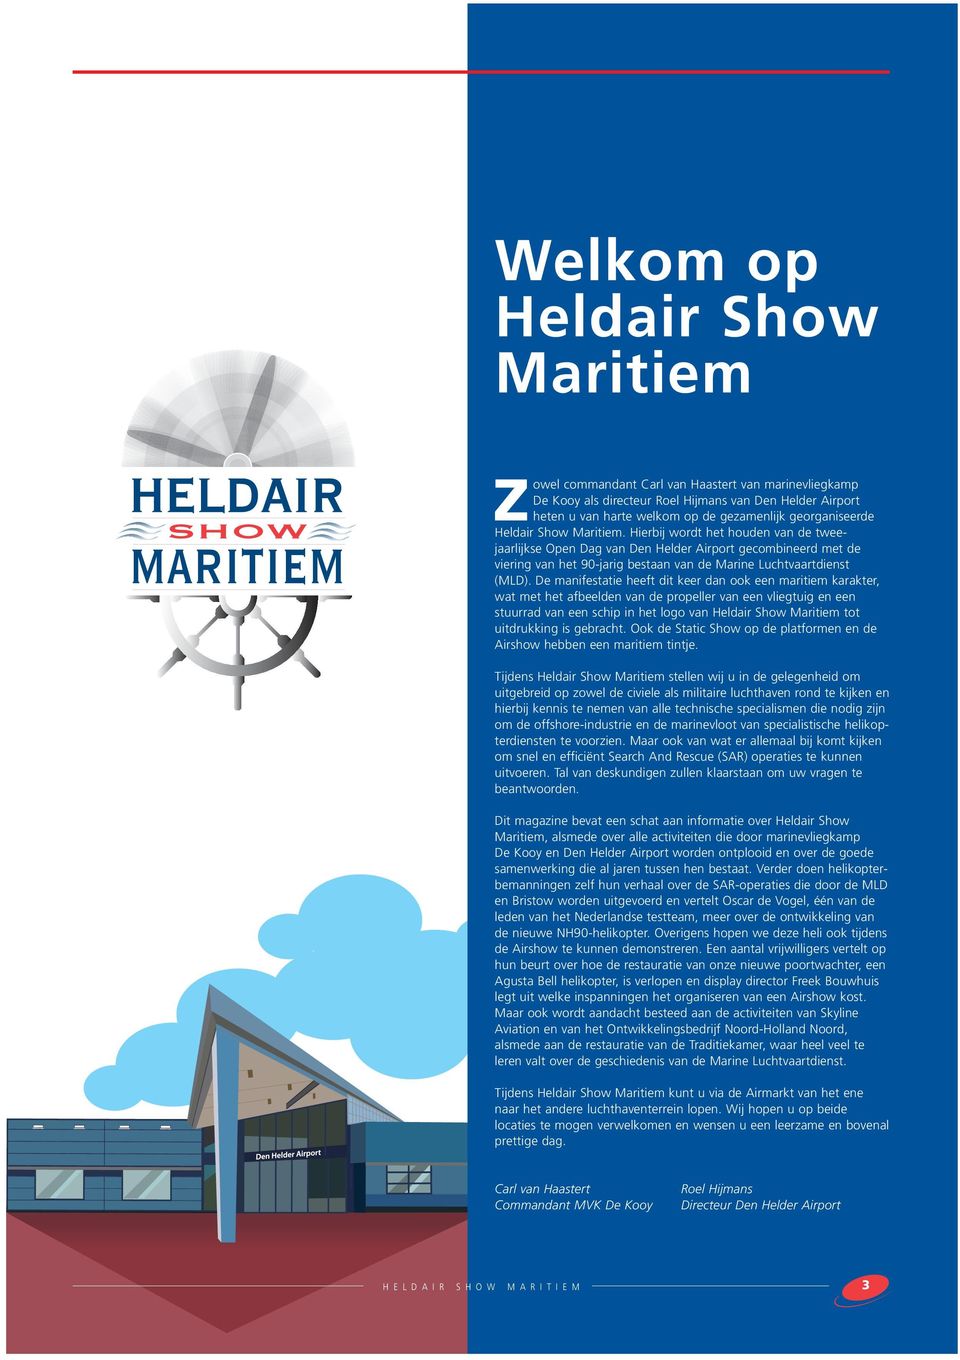 Hierbij wordt het houden van de tweejaarlijkse Open Dag van Den Helder Airport gecombineerd met de viering van het 90-jarig bestaan van de Marine Luchtvaartdienst (MLD).